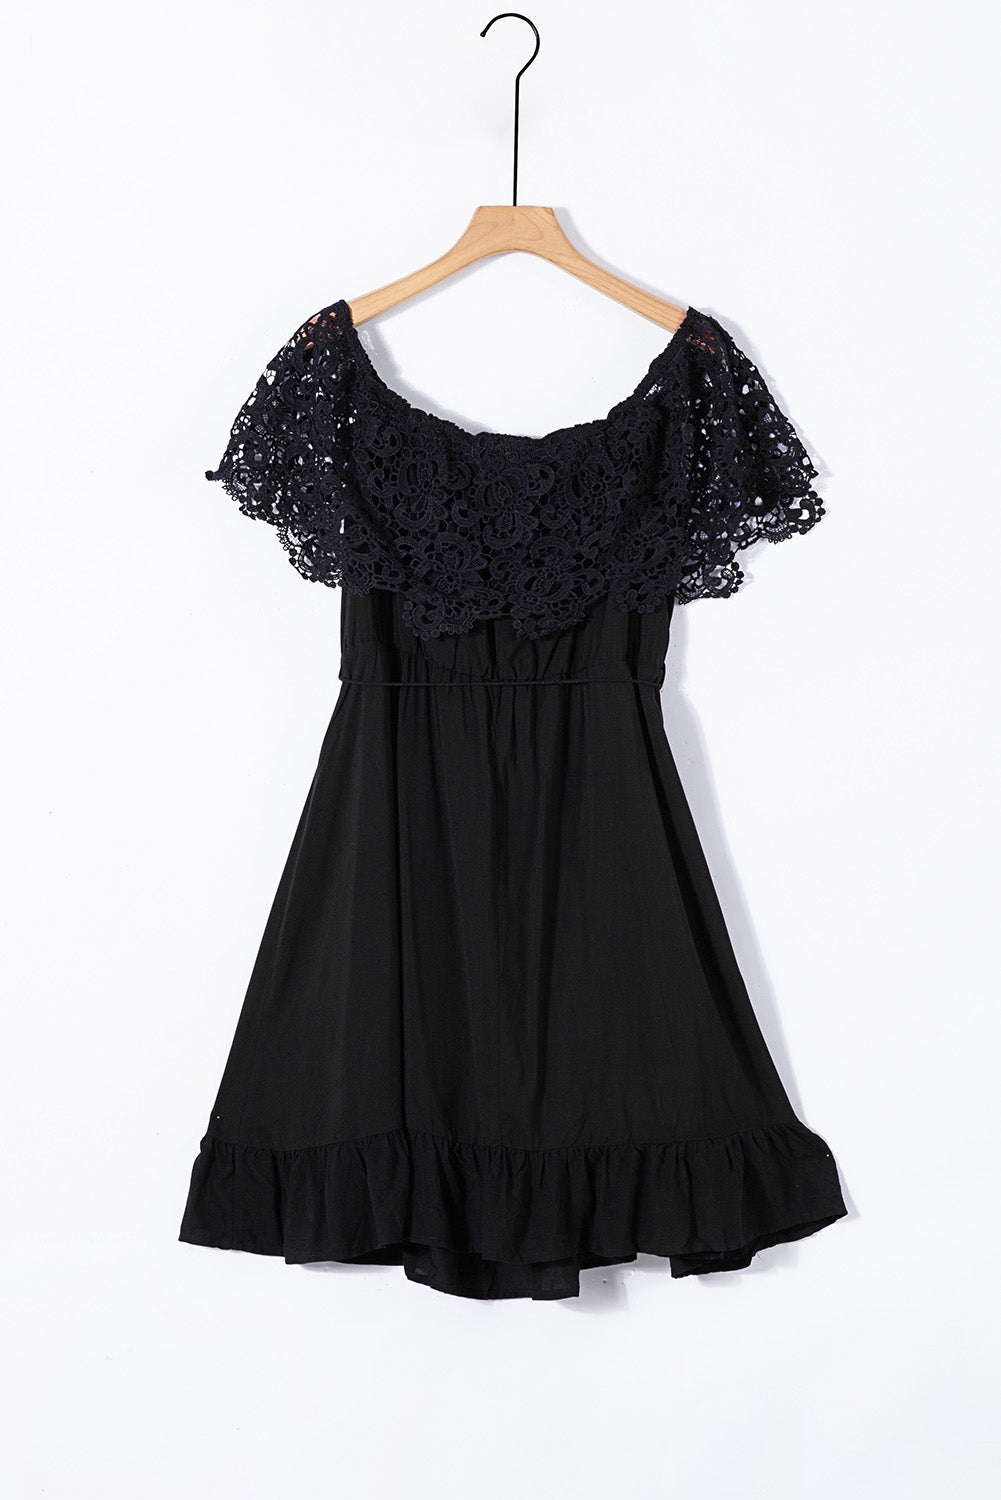 Schwarzes, schulterfreies Kleid in Übergröße mit Spitzenärmeln